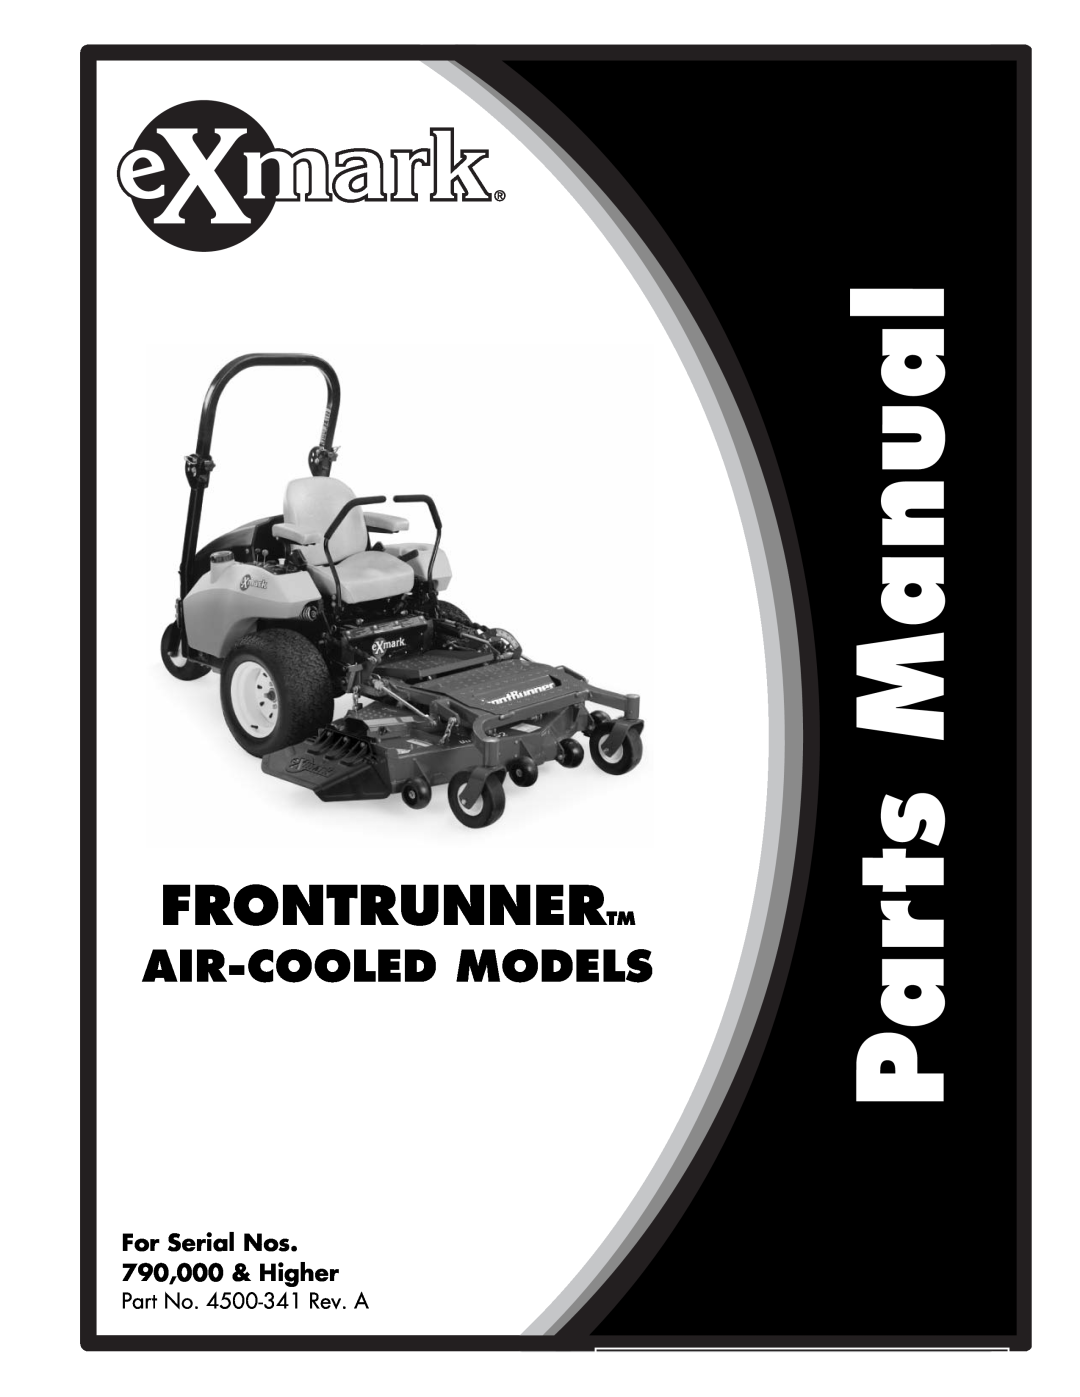 Exmark manual Frontrunnertm, Air-Cooledmodels, For Serial Nos 790,000 & Higher, Part No. 4500-341Rev. A 